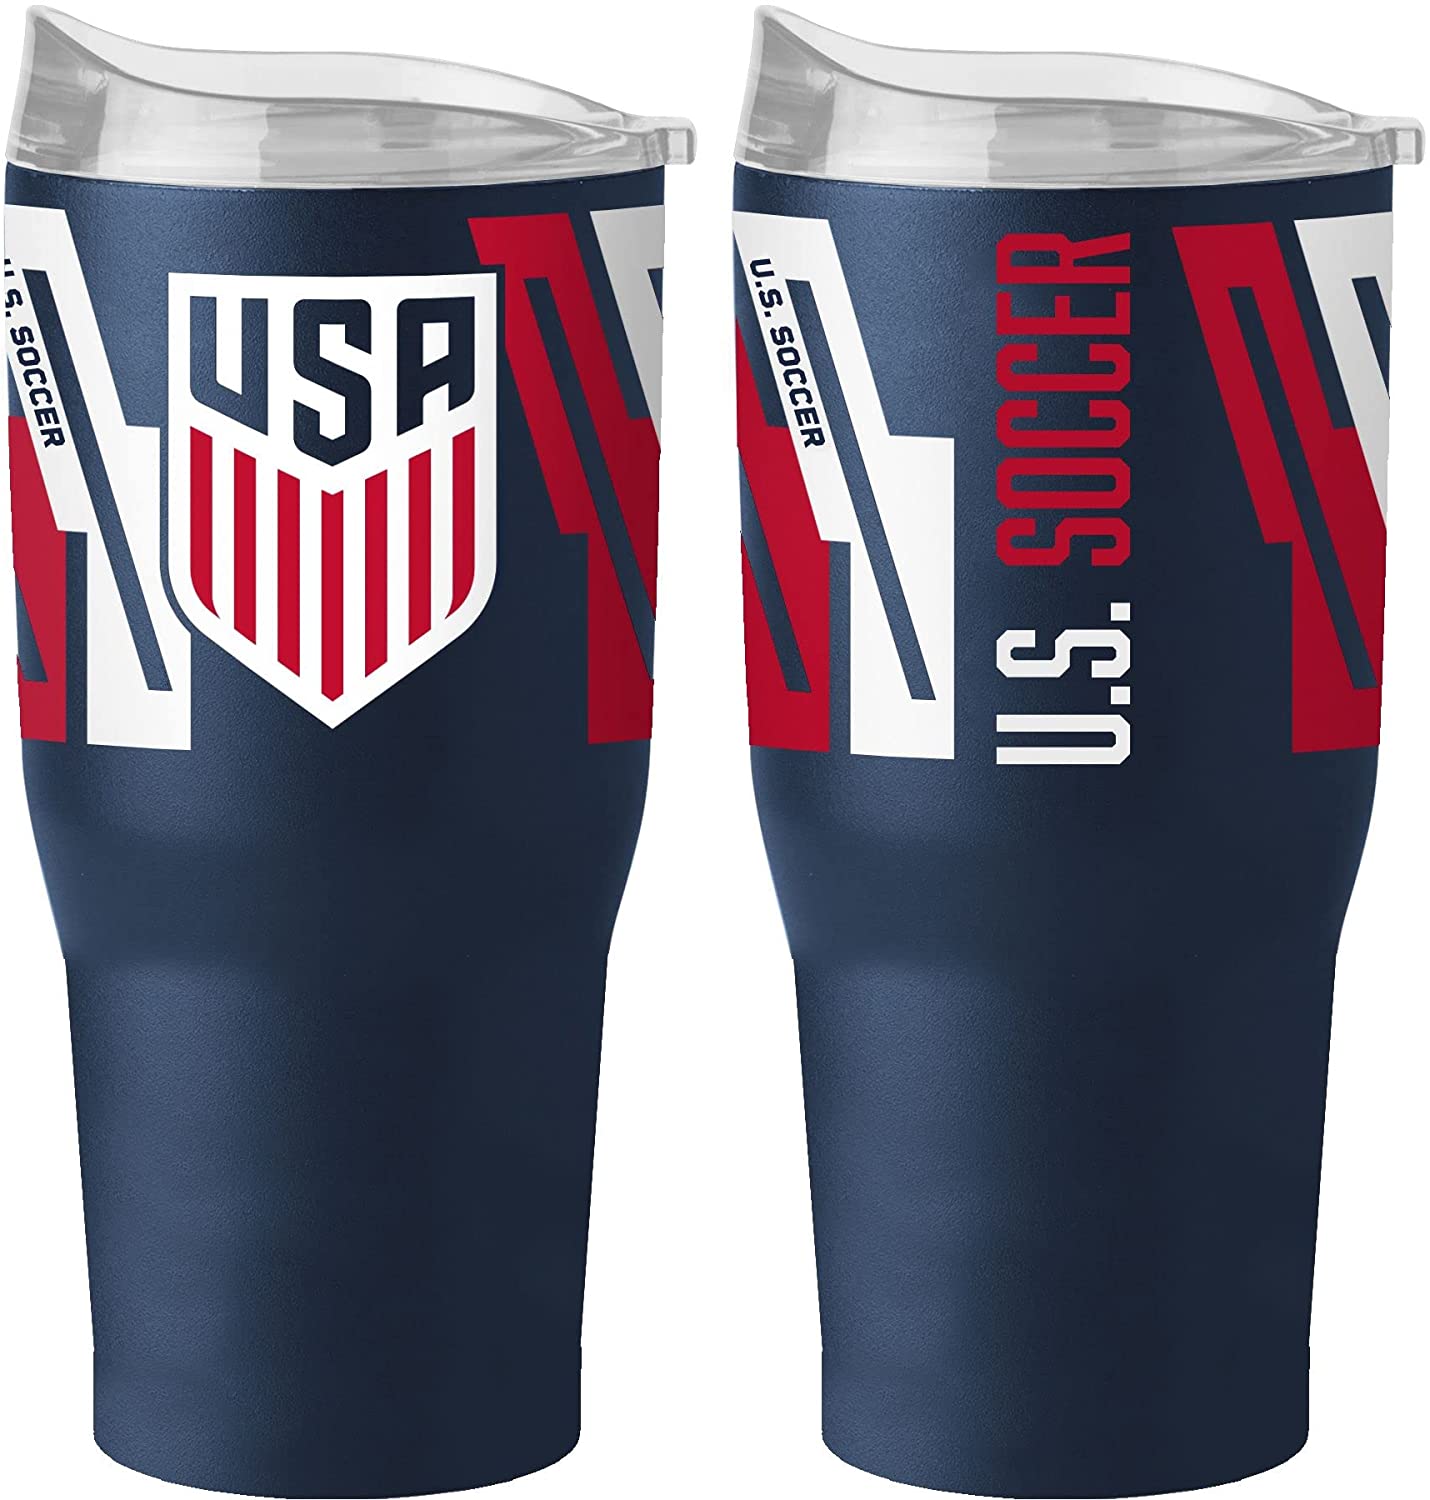 Logo Brands USA Soccer Stainless Steel 30oz. Tumbler